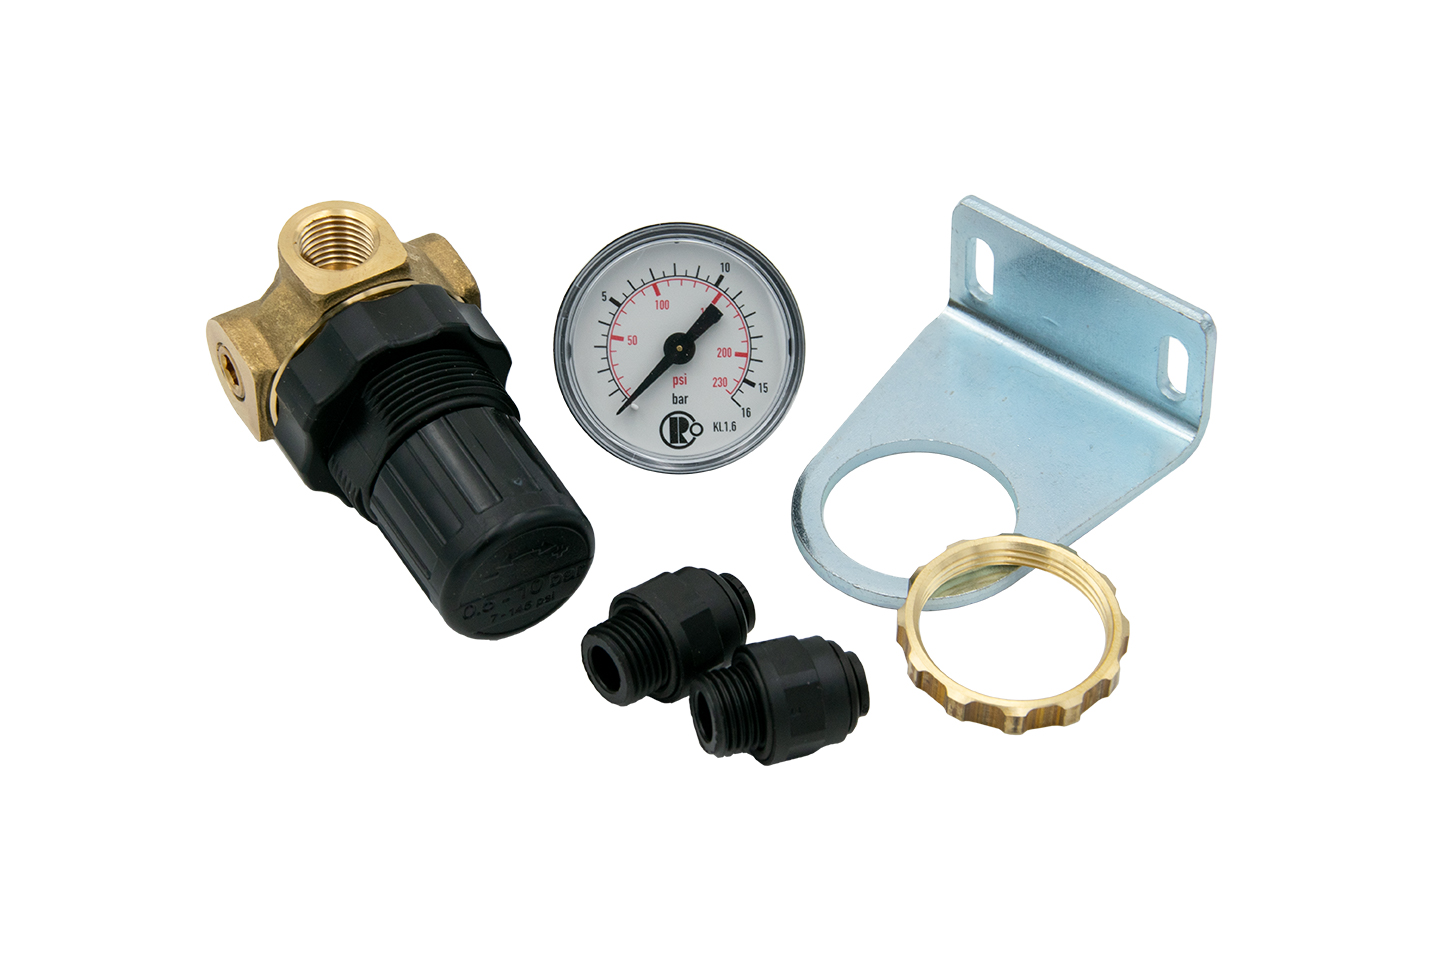 Pressure regulator - selfassembly kit